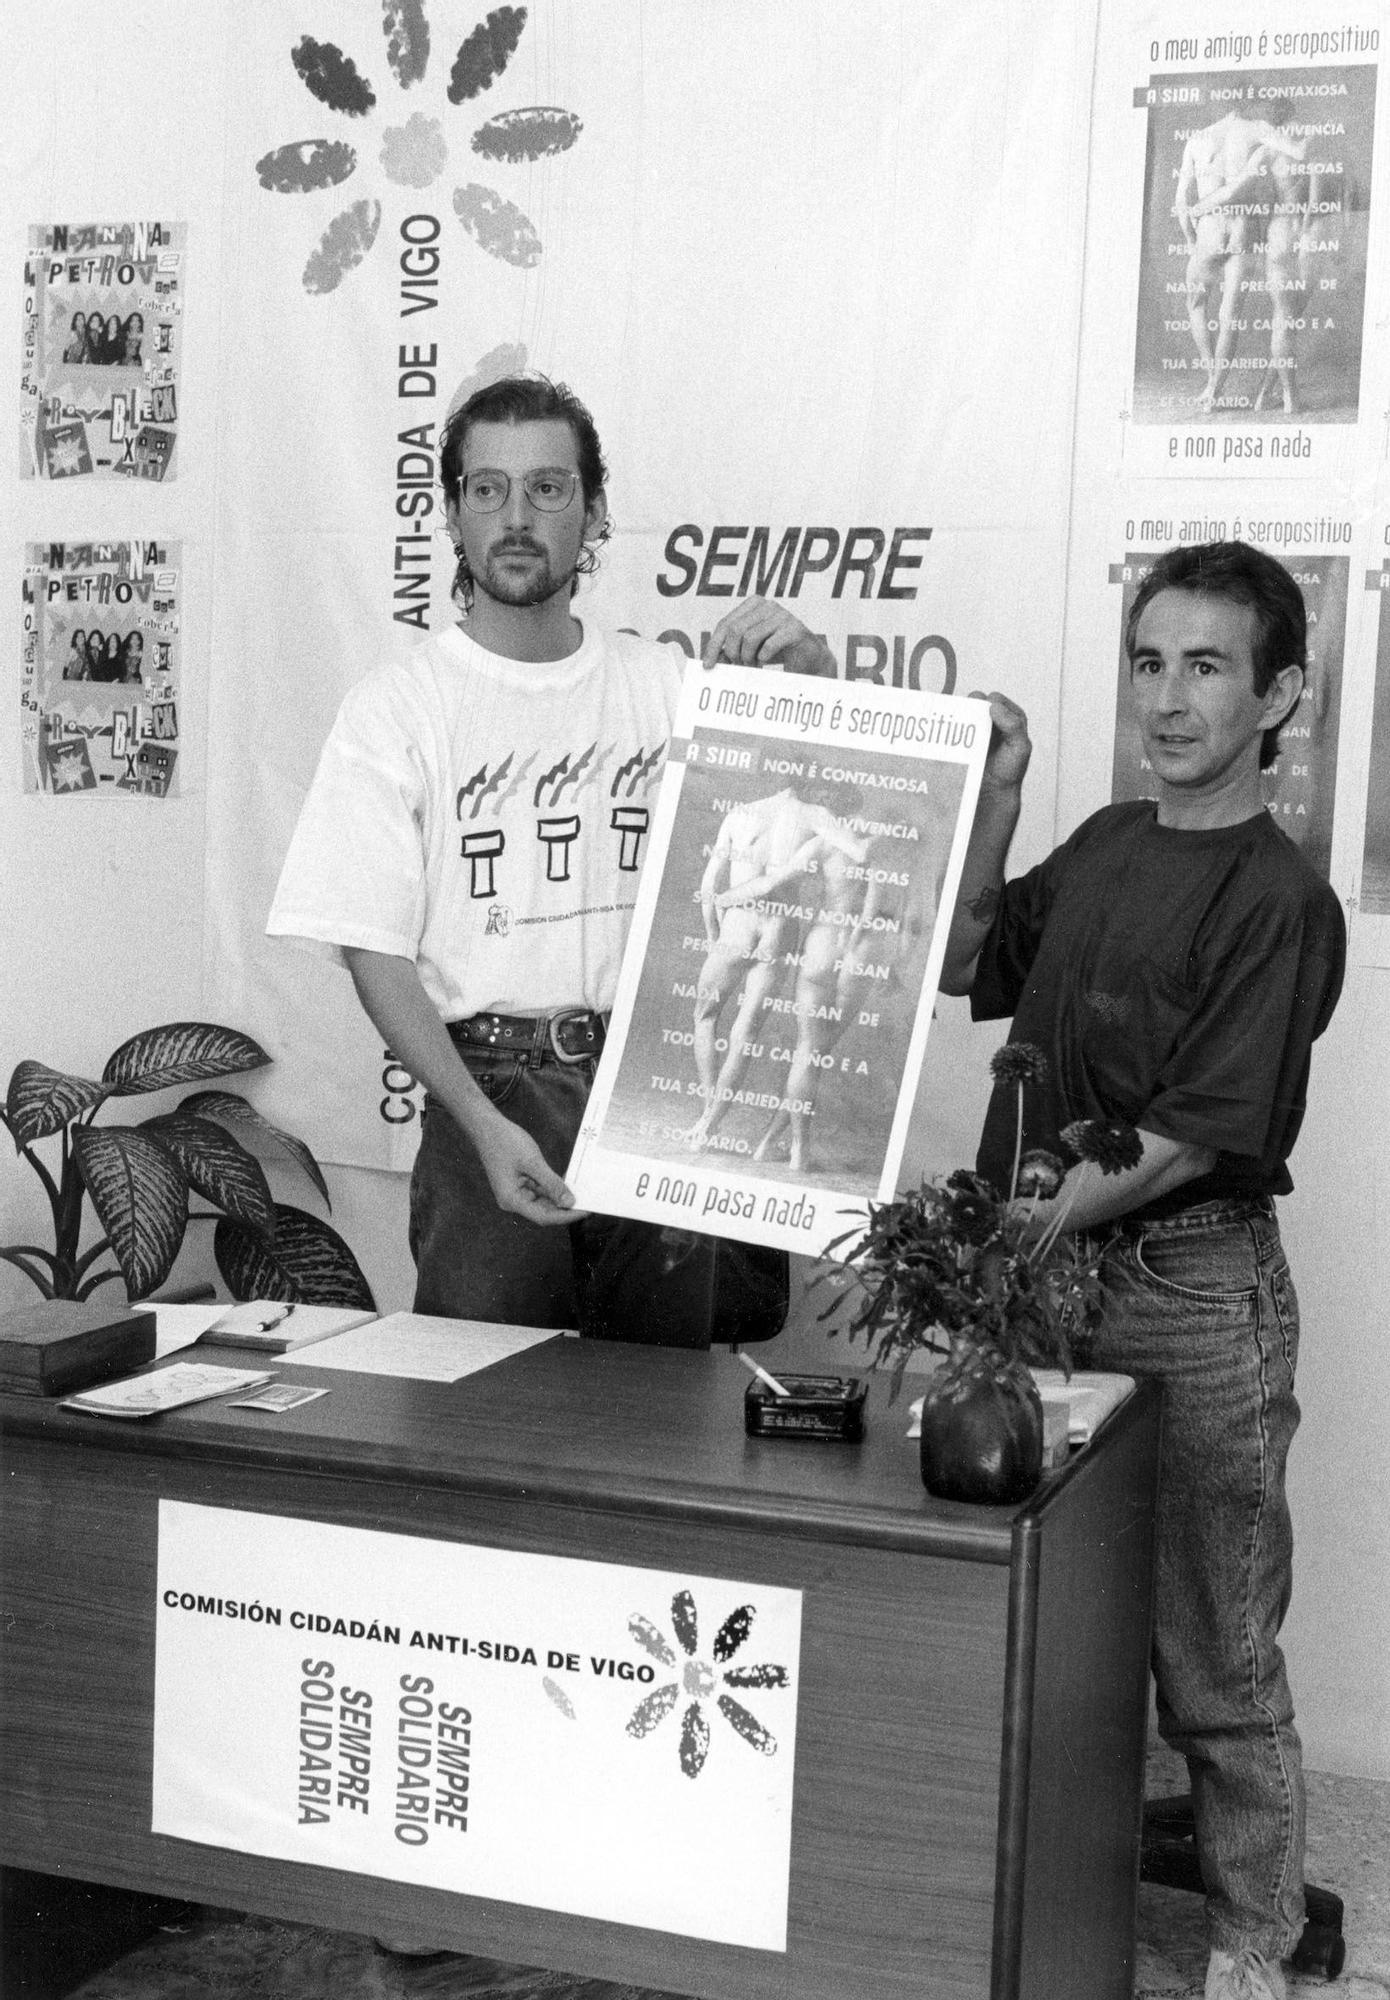 Campaña de tolerancia al seropositivo a cargo de la Comisión Ciudadana anti-sida de Vigo